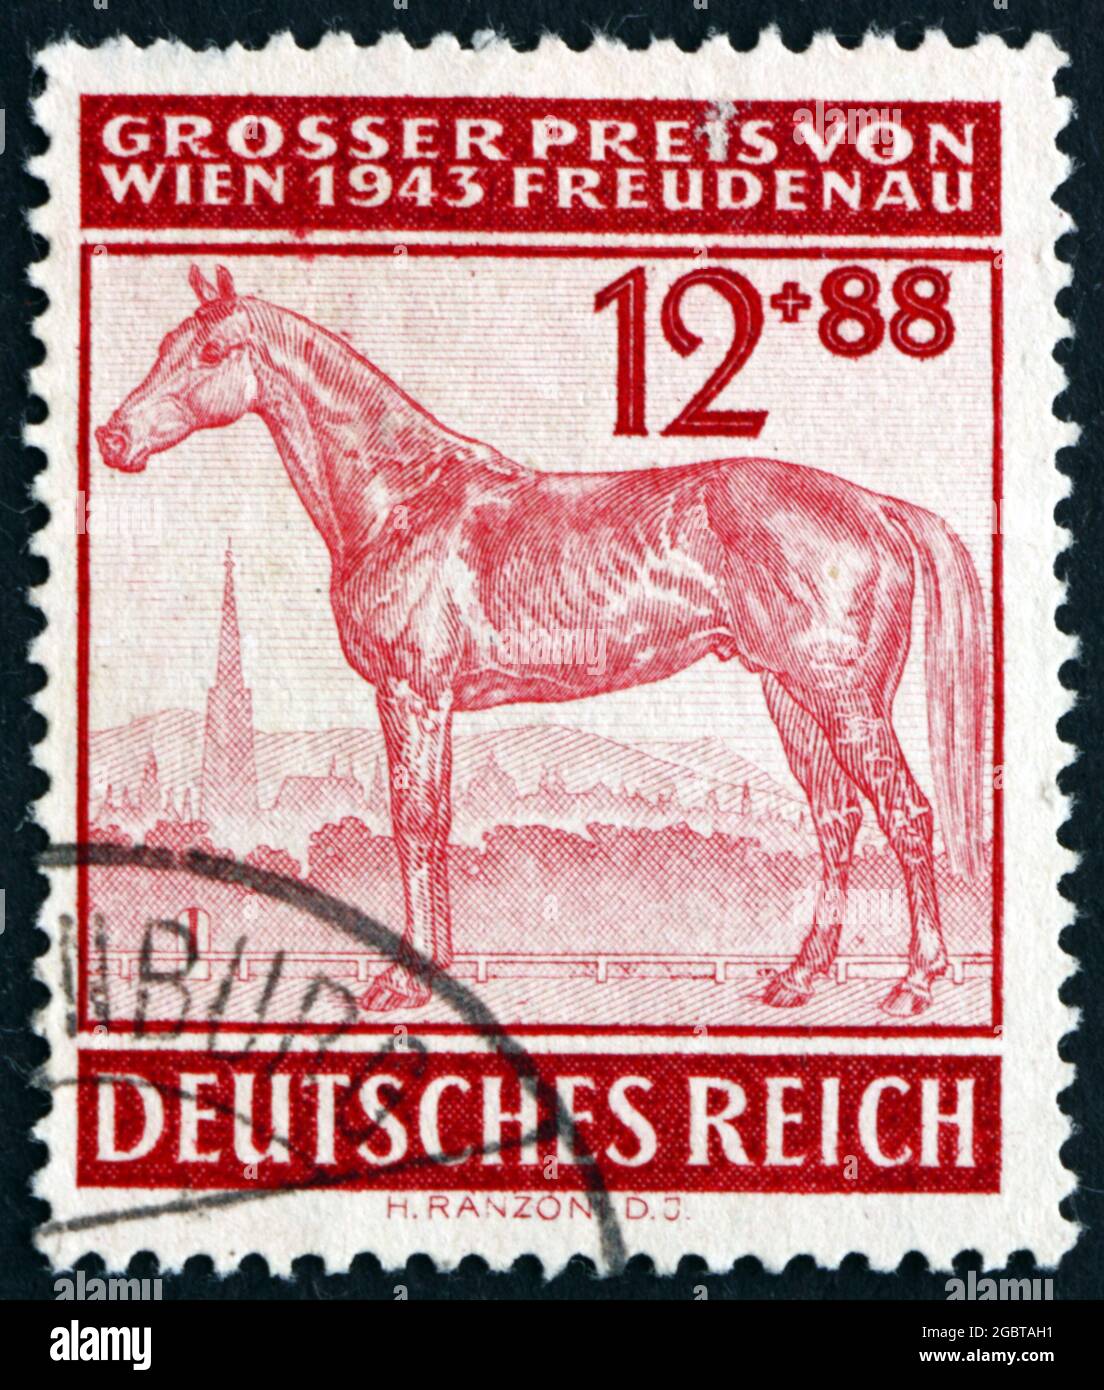 ALEMANIA - ALREDEDOR de 1943: Un sello impreso en Alemania muestra Race Horse, Gran Premio del Freudenau, la pista de carreras de Viena, alrededor de 1943 Foto de stock